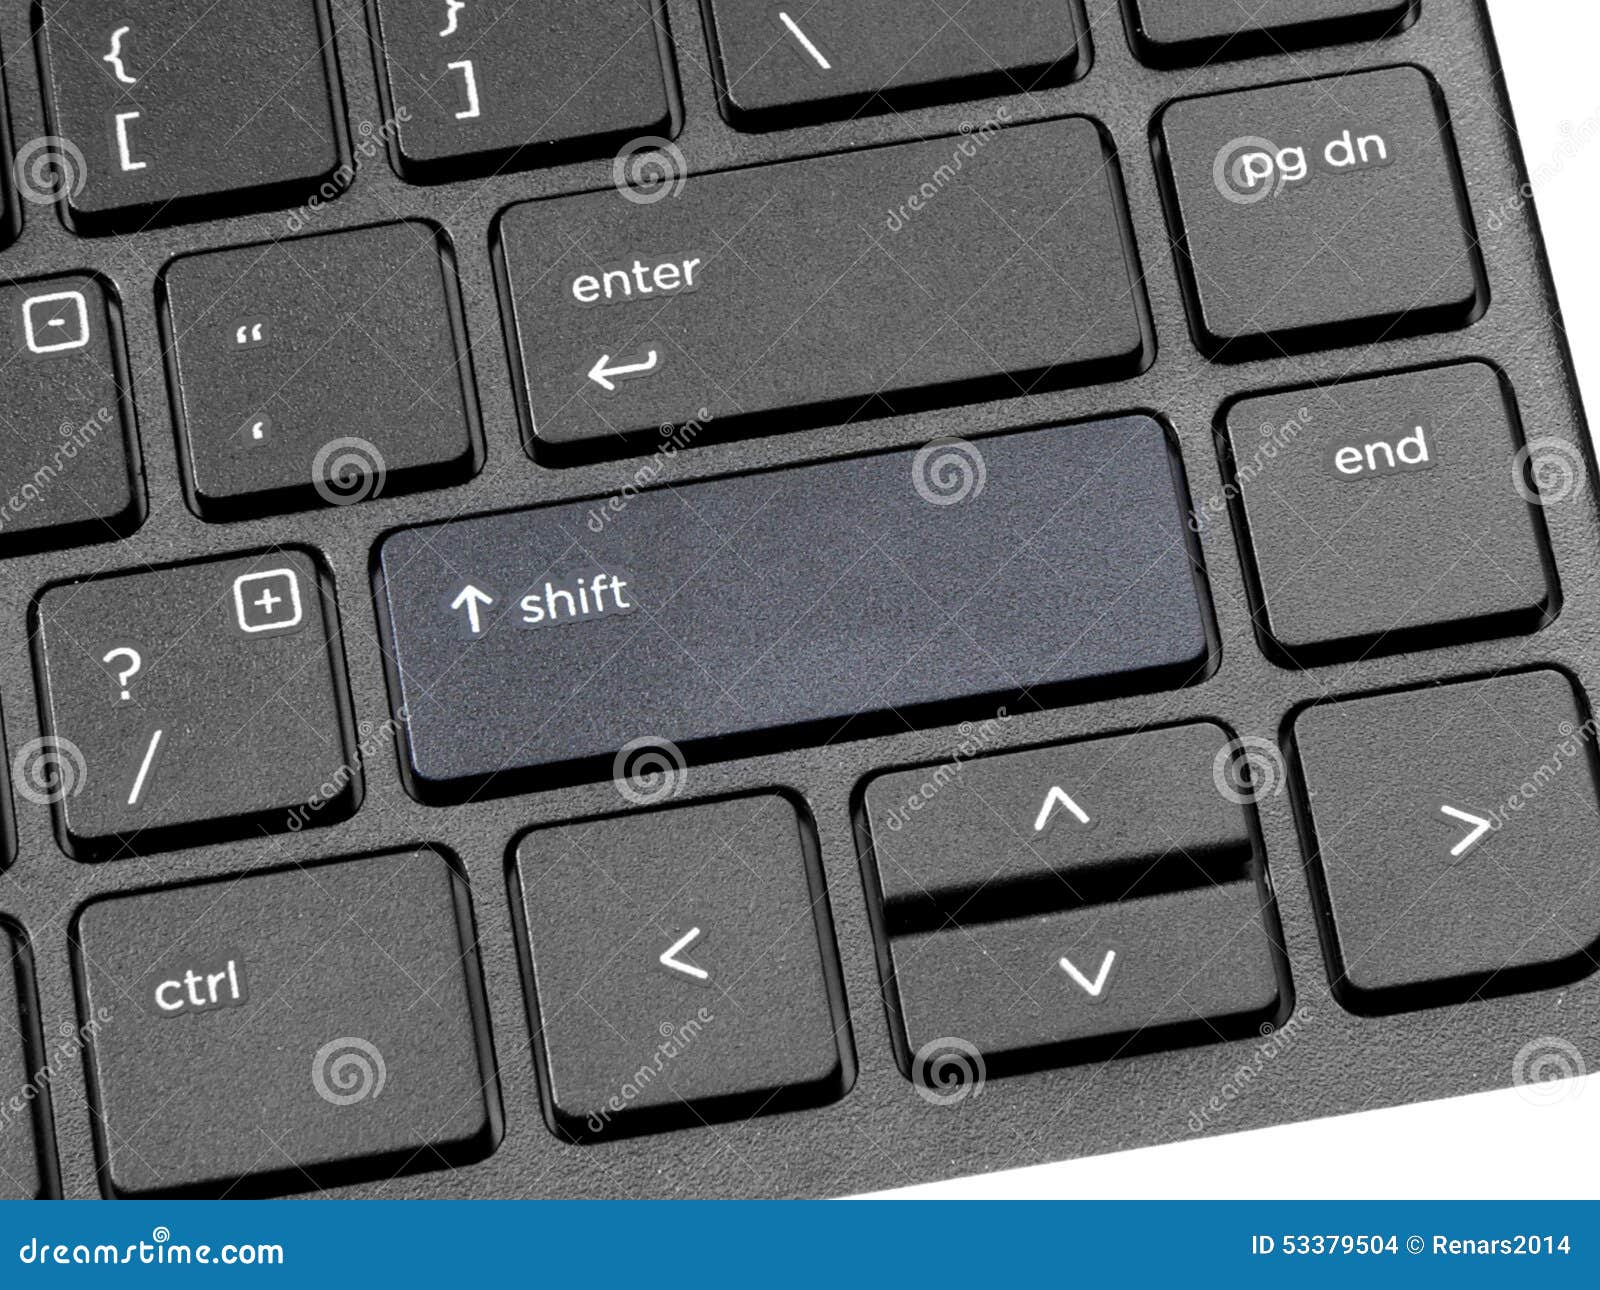 Enter shift клавиши. Кнопка шифт на клавиатуре. Shift на клавиатуре компьютера. Клавиша шифт на компьютере. Клавиша шифт на клавиатуре.